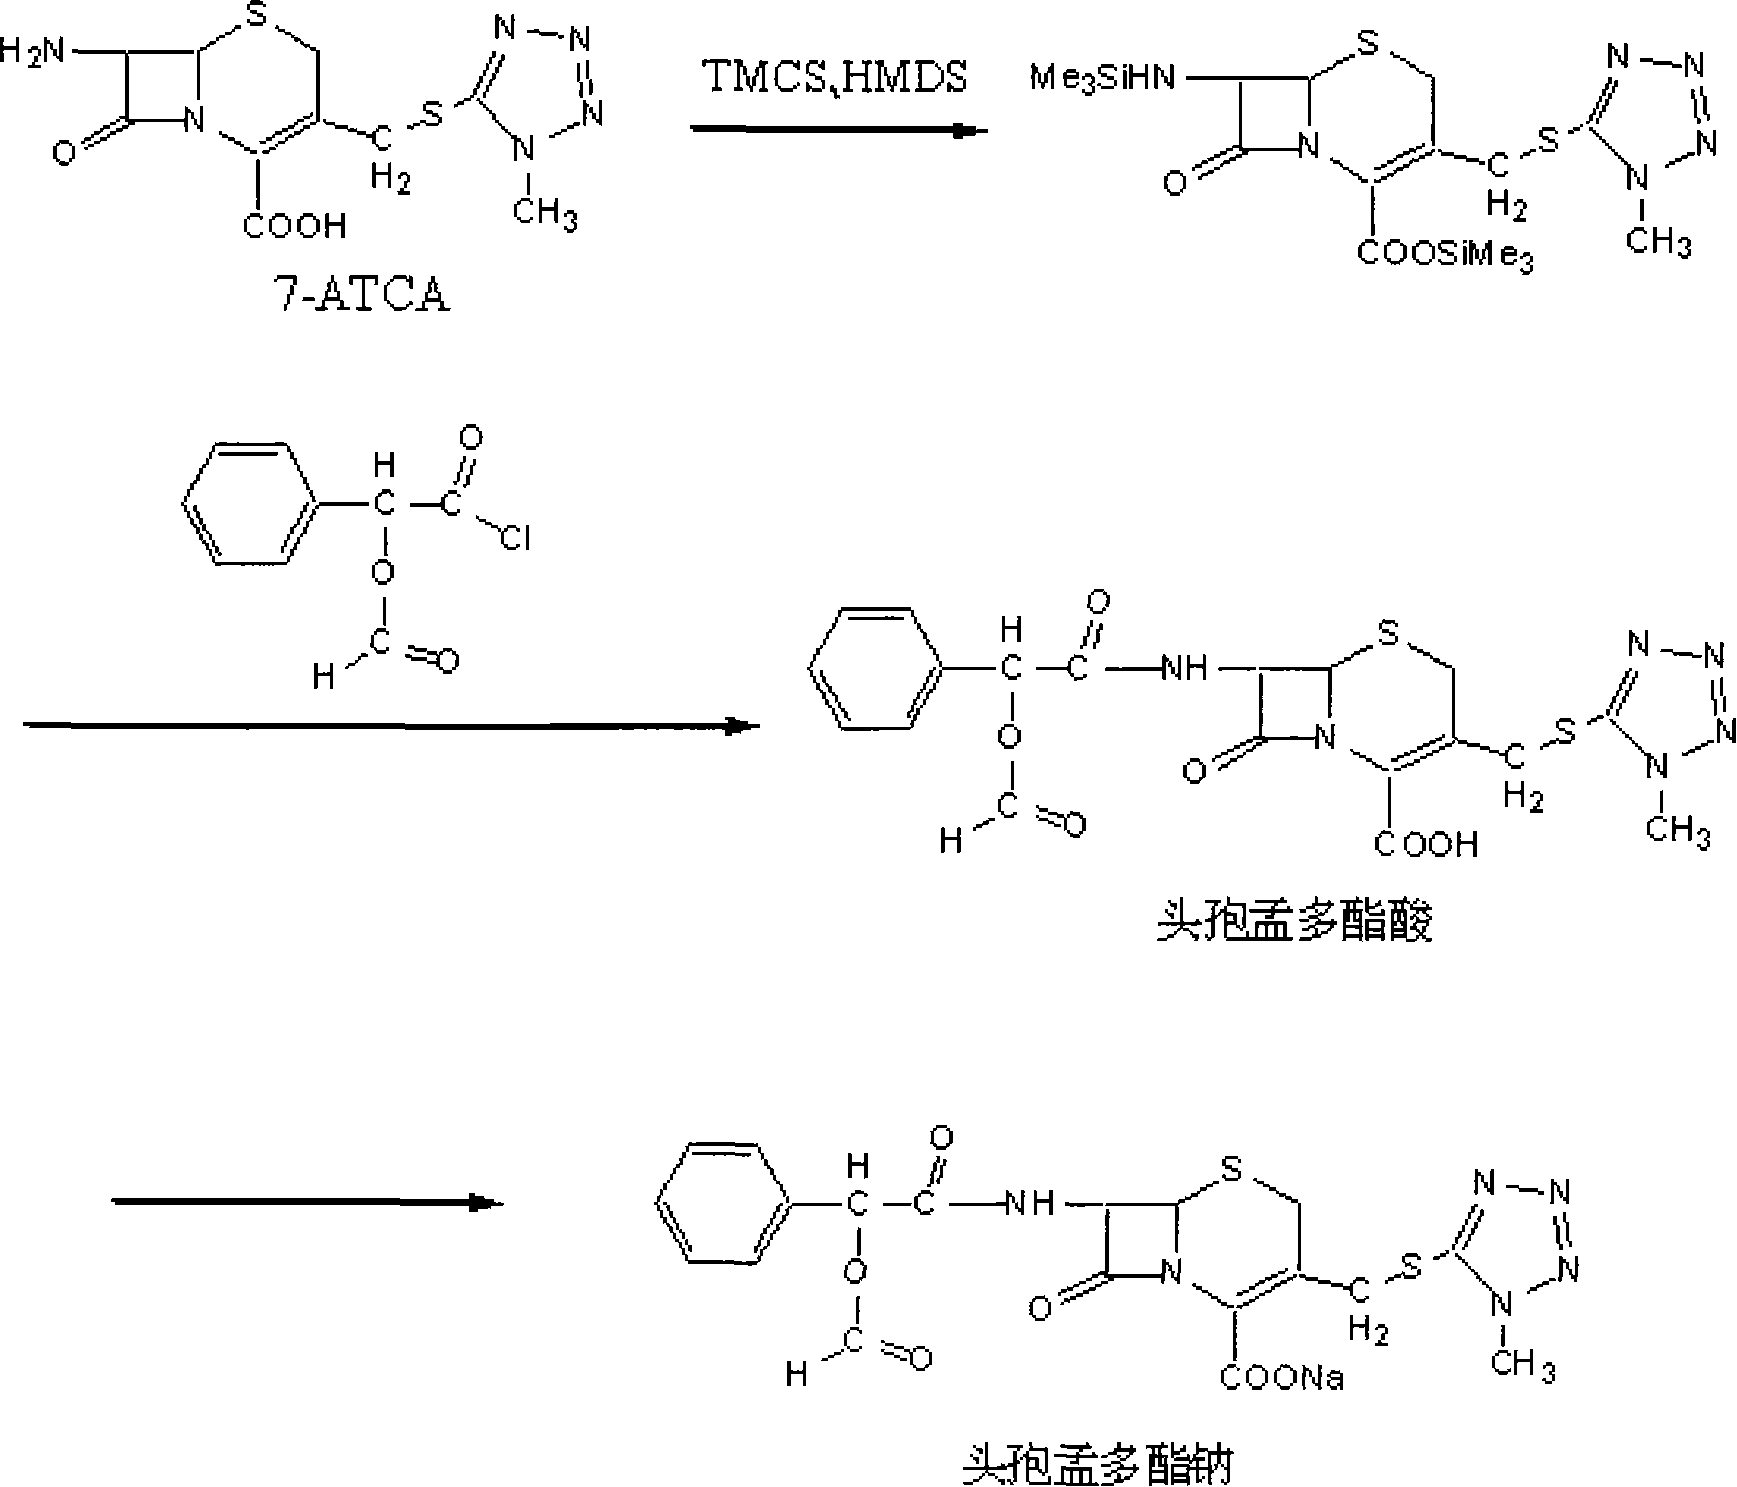 Method of synthesizing antibiotics cefamandole nafate